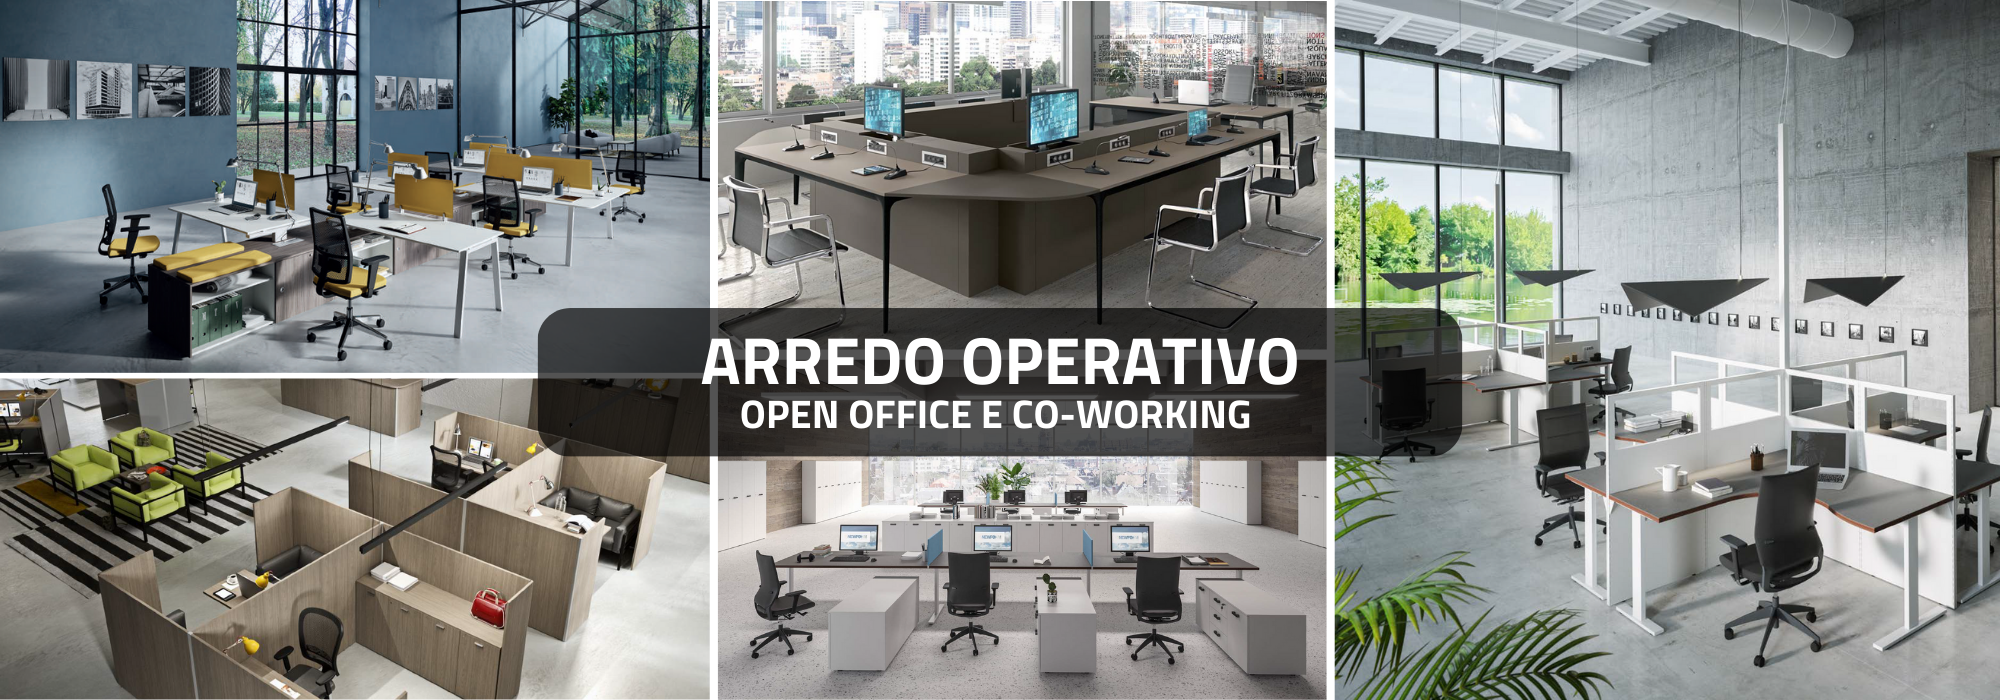 sancilio evotech molfetta srl - arredo operativo coworking open spoace ufficio office azienda locale commerciale